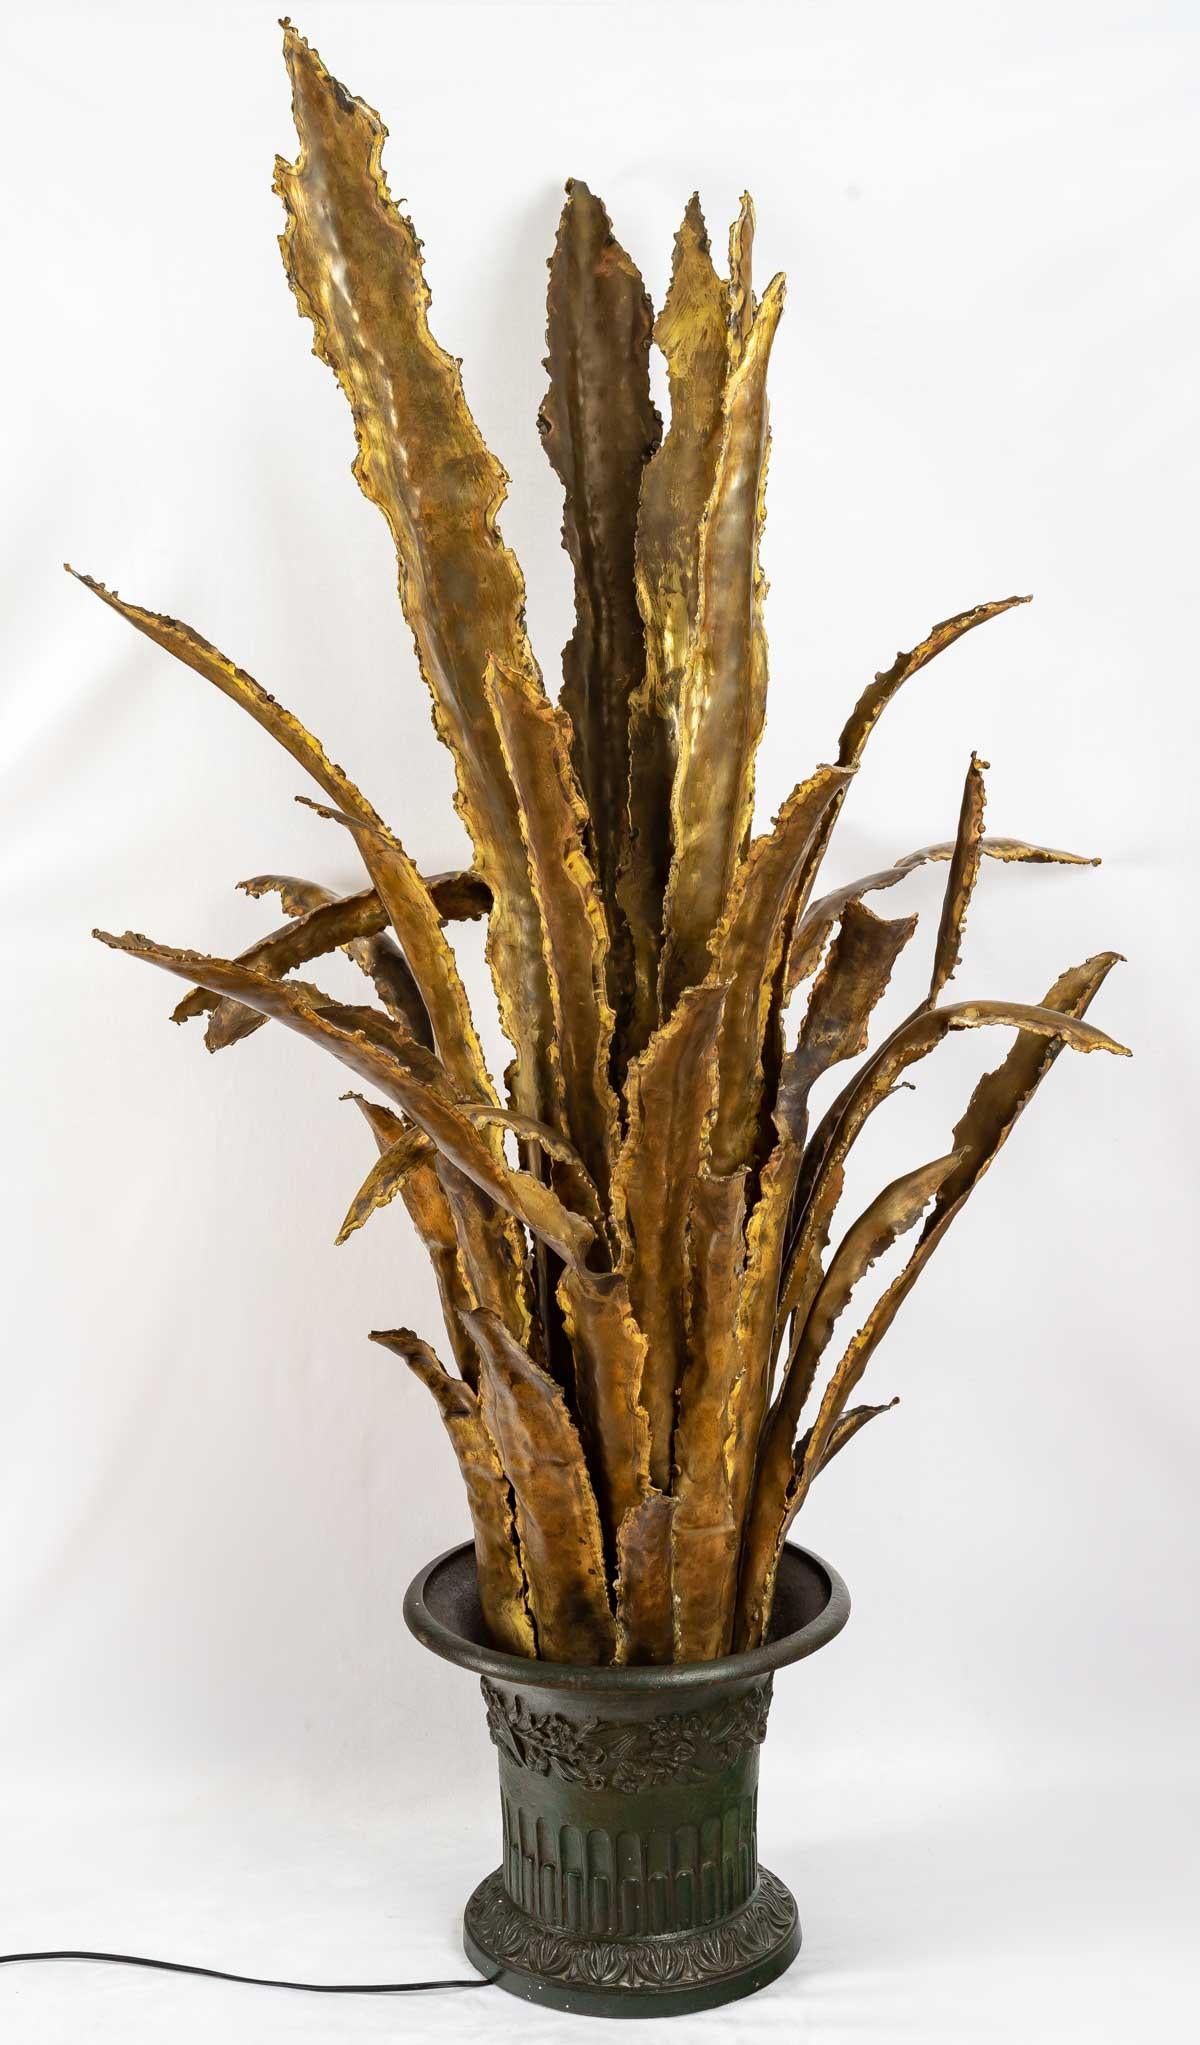 Extraordinaire lampadaire en forme de Sansevieria, entièrement réalisé en laiton bruni et en bronze, avec de larges et hautes feuilles qui s'étendent vers le haut et un seul support lumineux au centre, à la base de la lampe.
De très bonne qualité